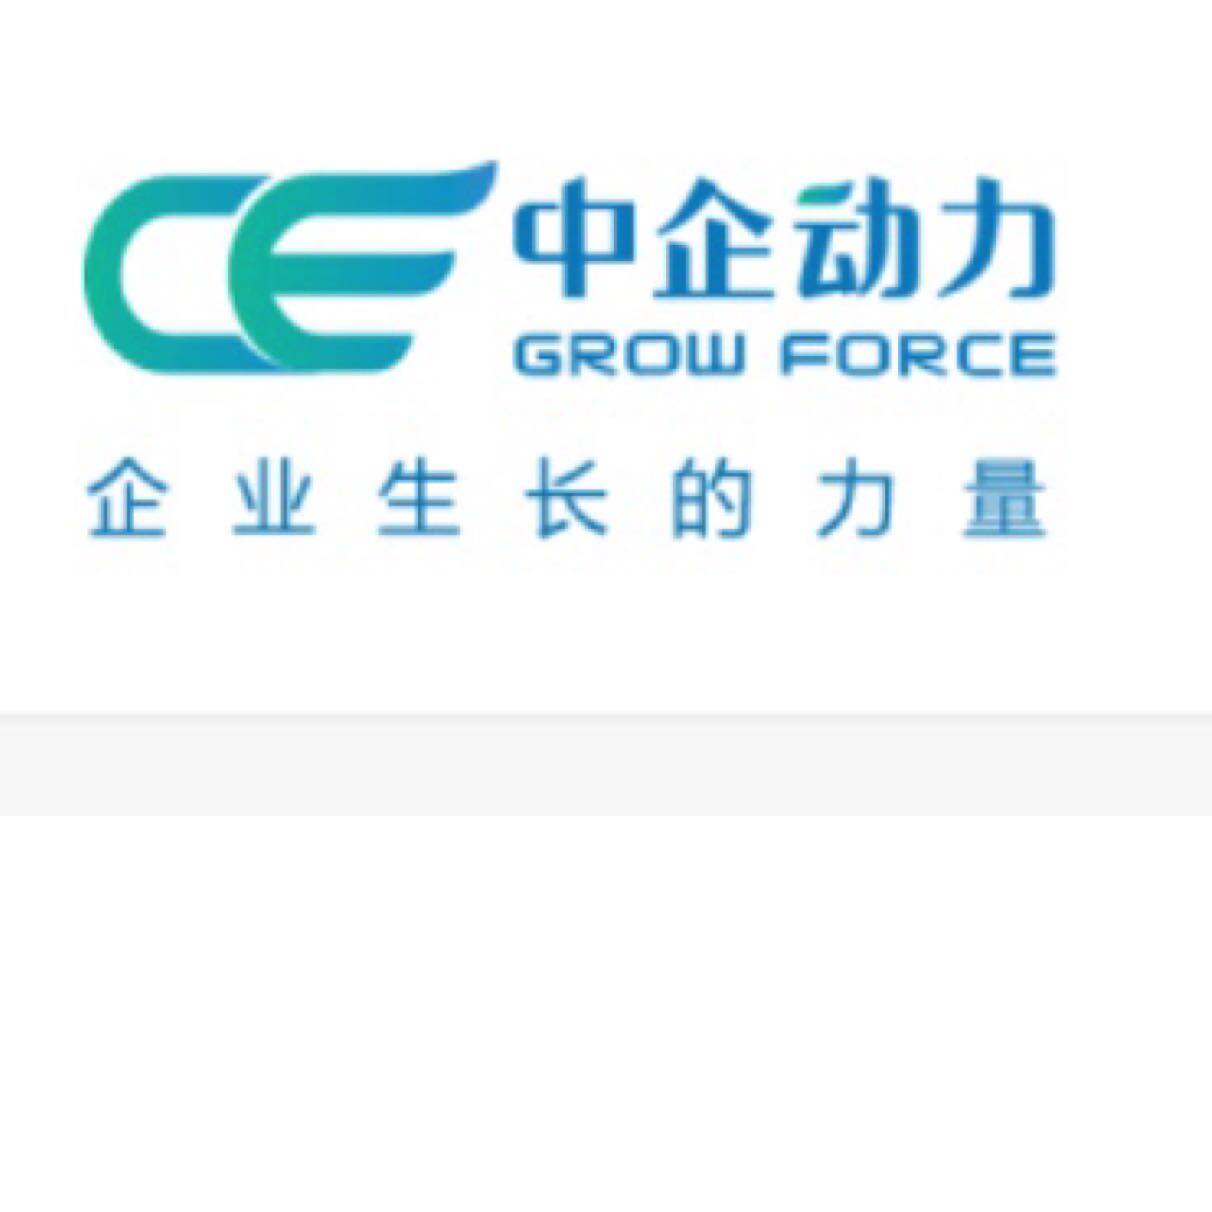 中企动力科技股份有限公司济南分公司logo